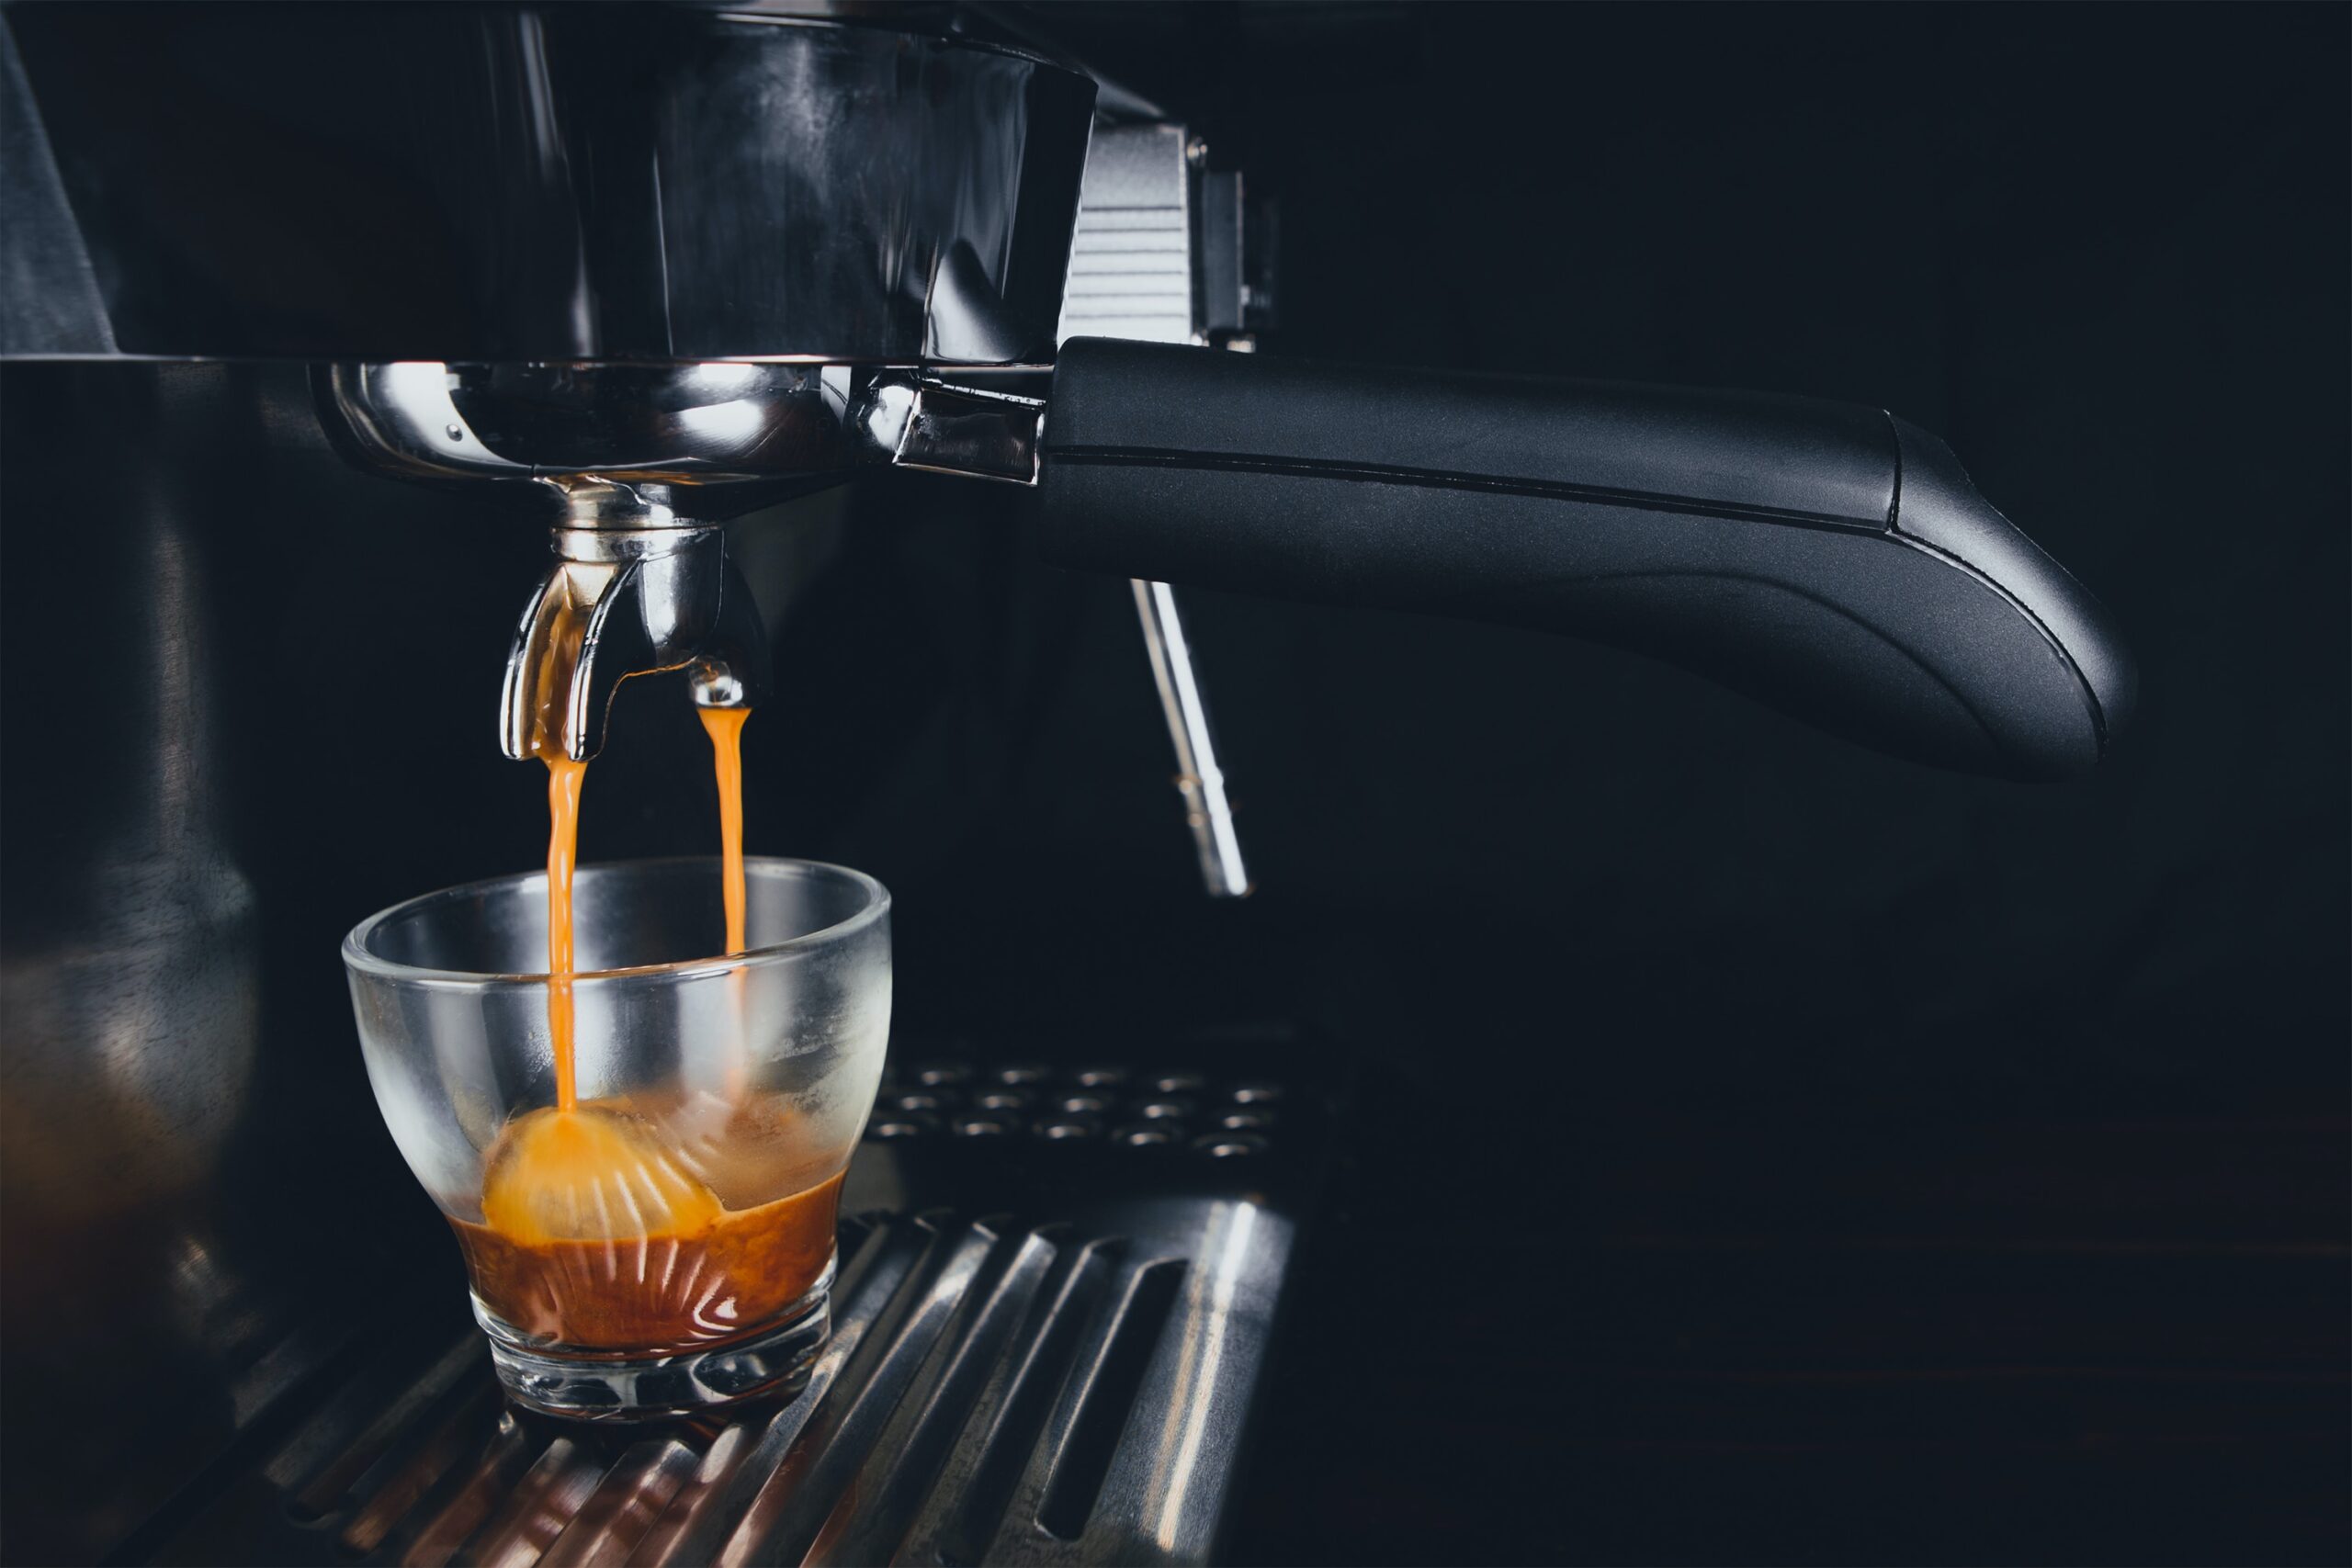 Compare our Super-automatic espresso machines